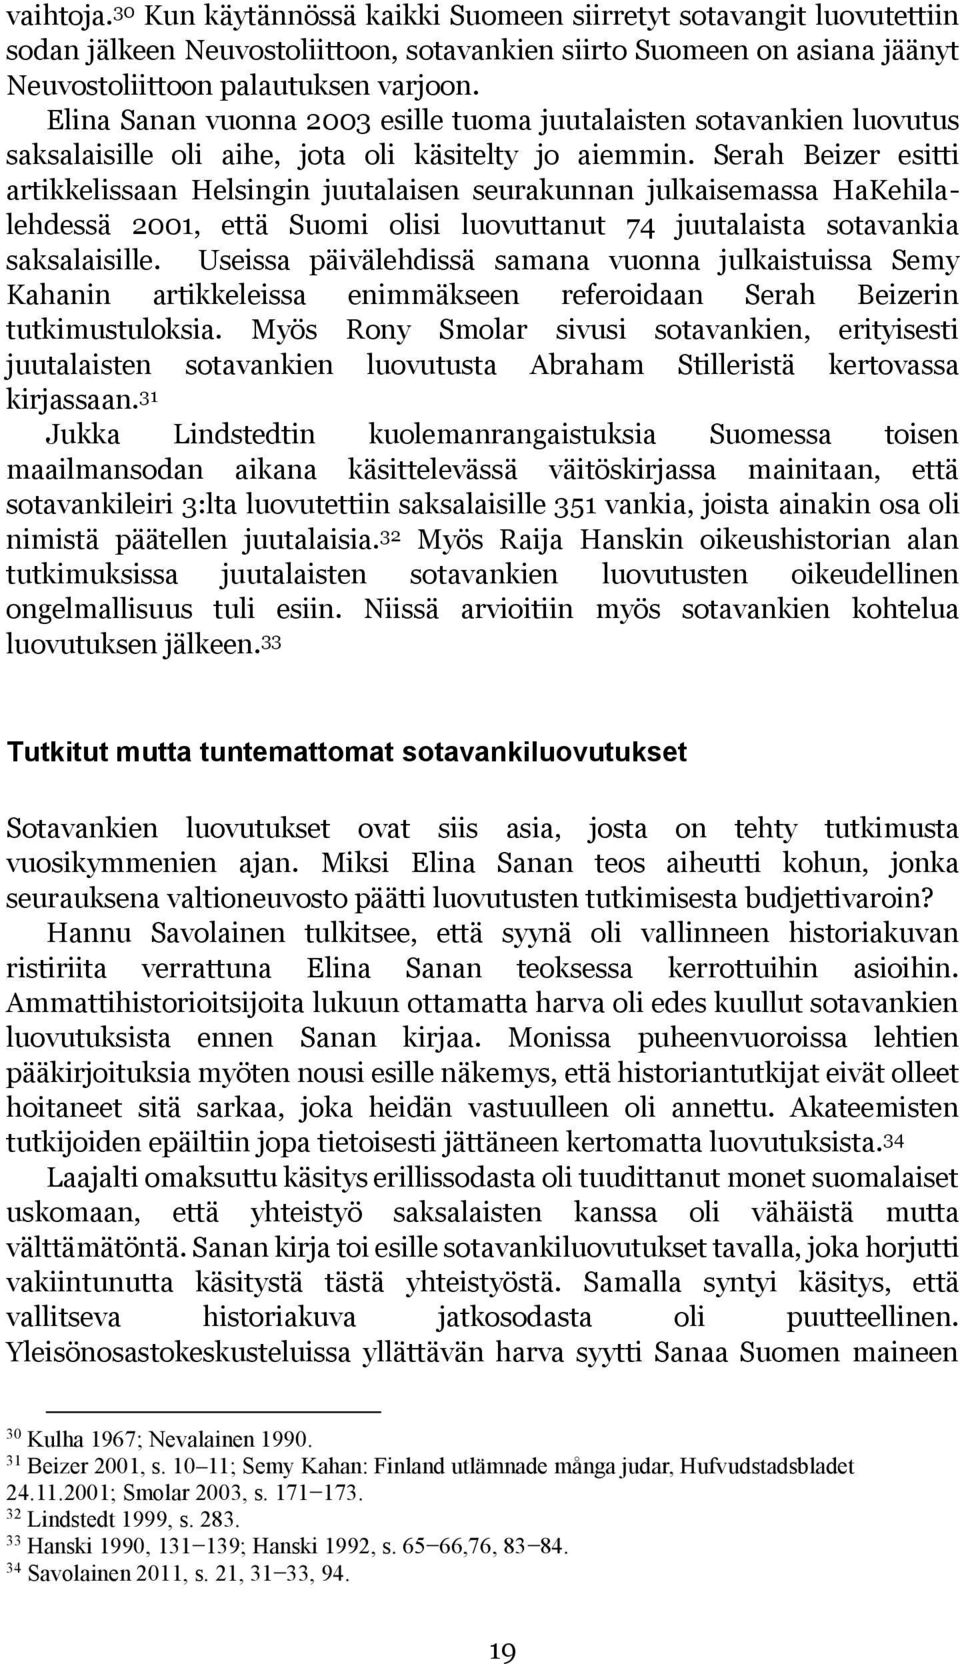 Serah Beizer esitti artikkelissaan Helsingin juutalaisen seurakunnan julkaisemassa HaKehilalehdessä 2001, että Suomi olisi luovuttanut 74 juutalaista sotavankia saksalaisille.